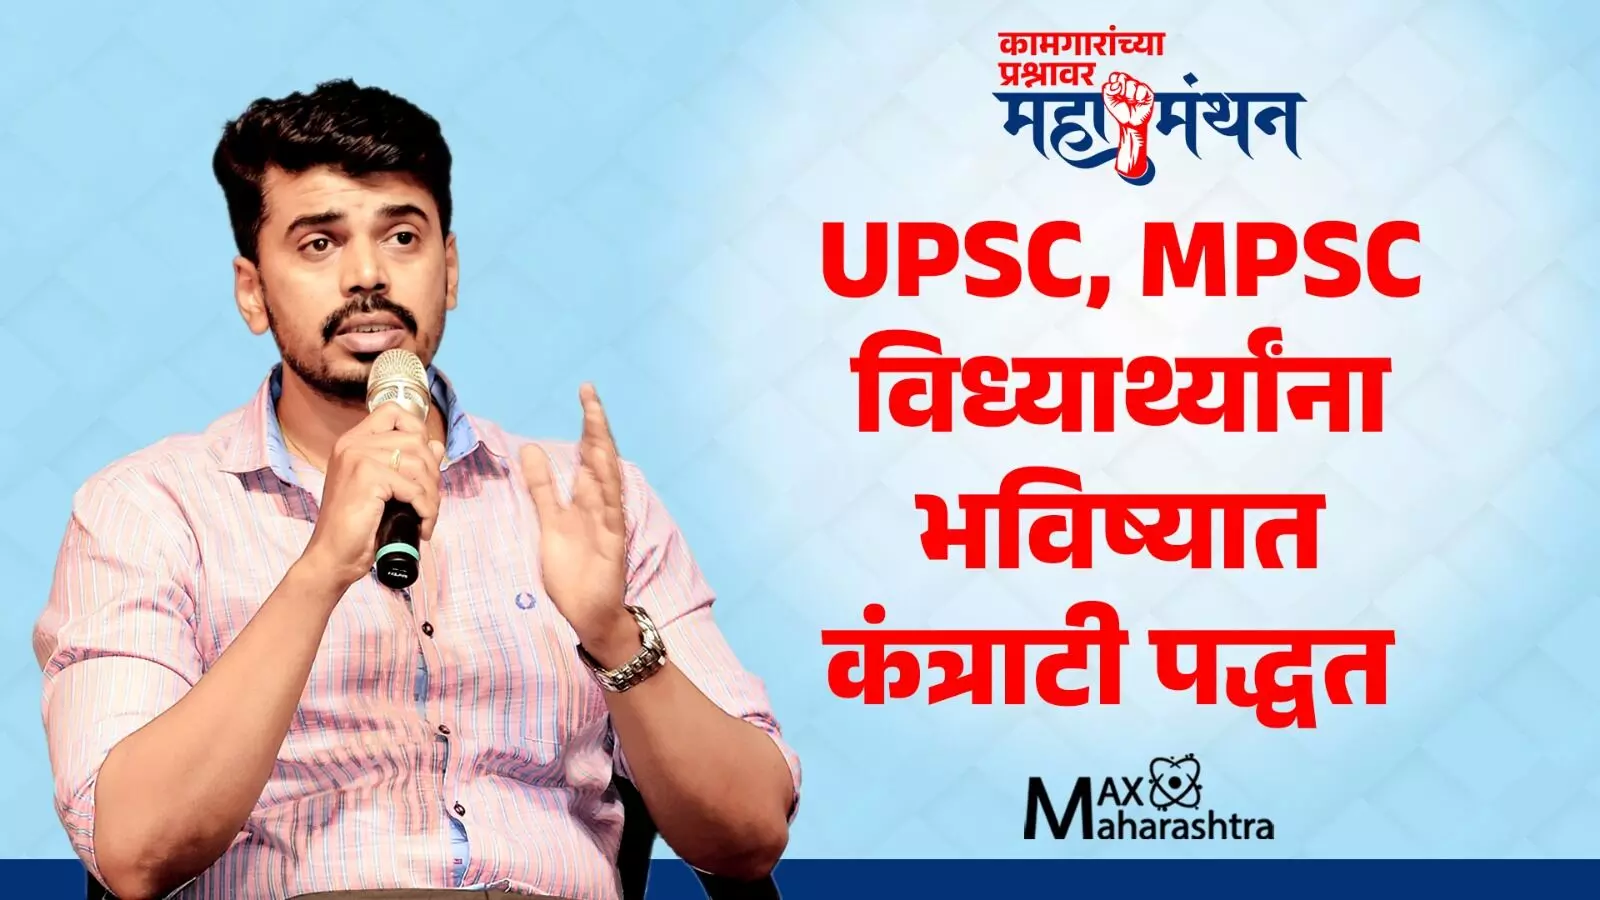 UPSC, MPSC च्या विध्यार्थ्यांना भविष्यात कंत्राटी पद्धतीने काम करावे लागणार -  जयंत सावंत